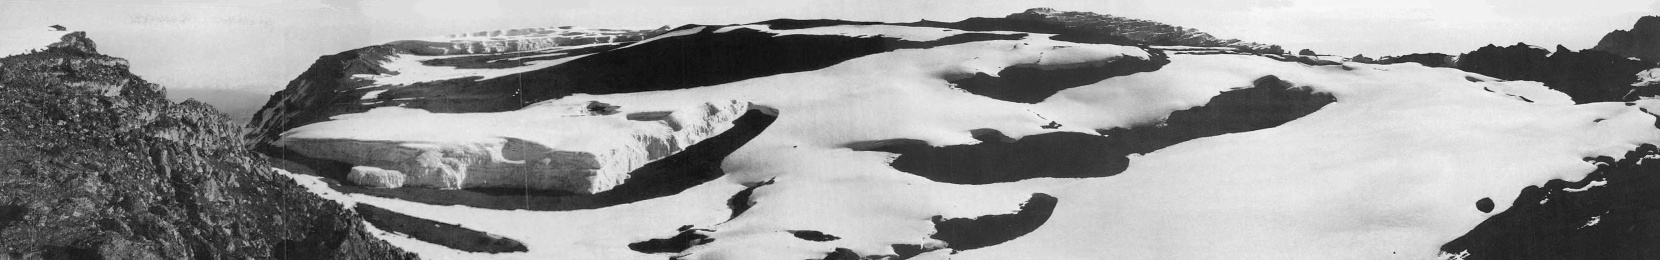 Der Furtwängler Gletscher in der Kibo-Kaldera im August 1973.Aufnahmestandpunkt am Uhuru Peak ( 5.895 m.a.S.L. ) mit Blick von Nord-West ( Kibo-Kaldera mit Furtwängler Gletscher) nach Osten (Mawenzi) - © Stefan Hastenrath [9]